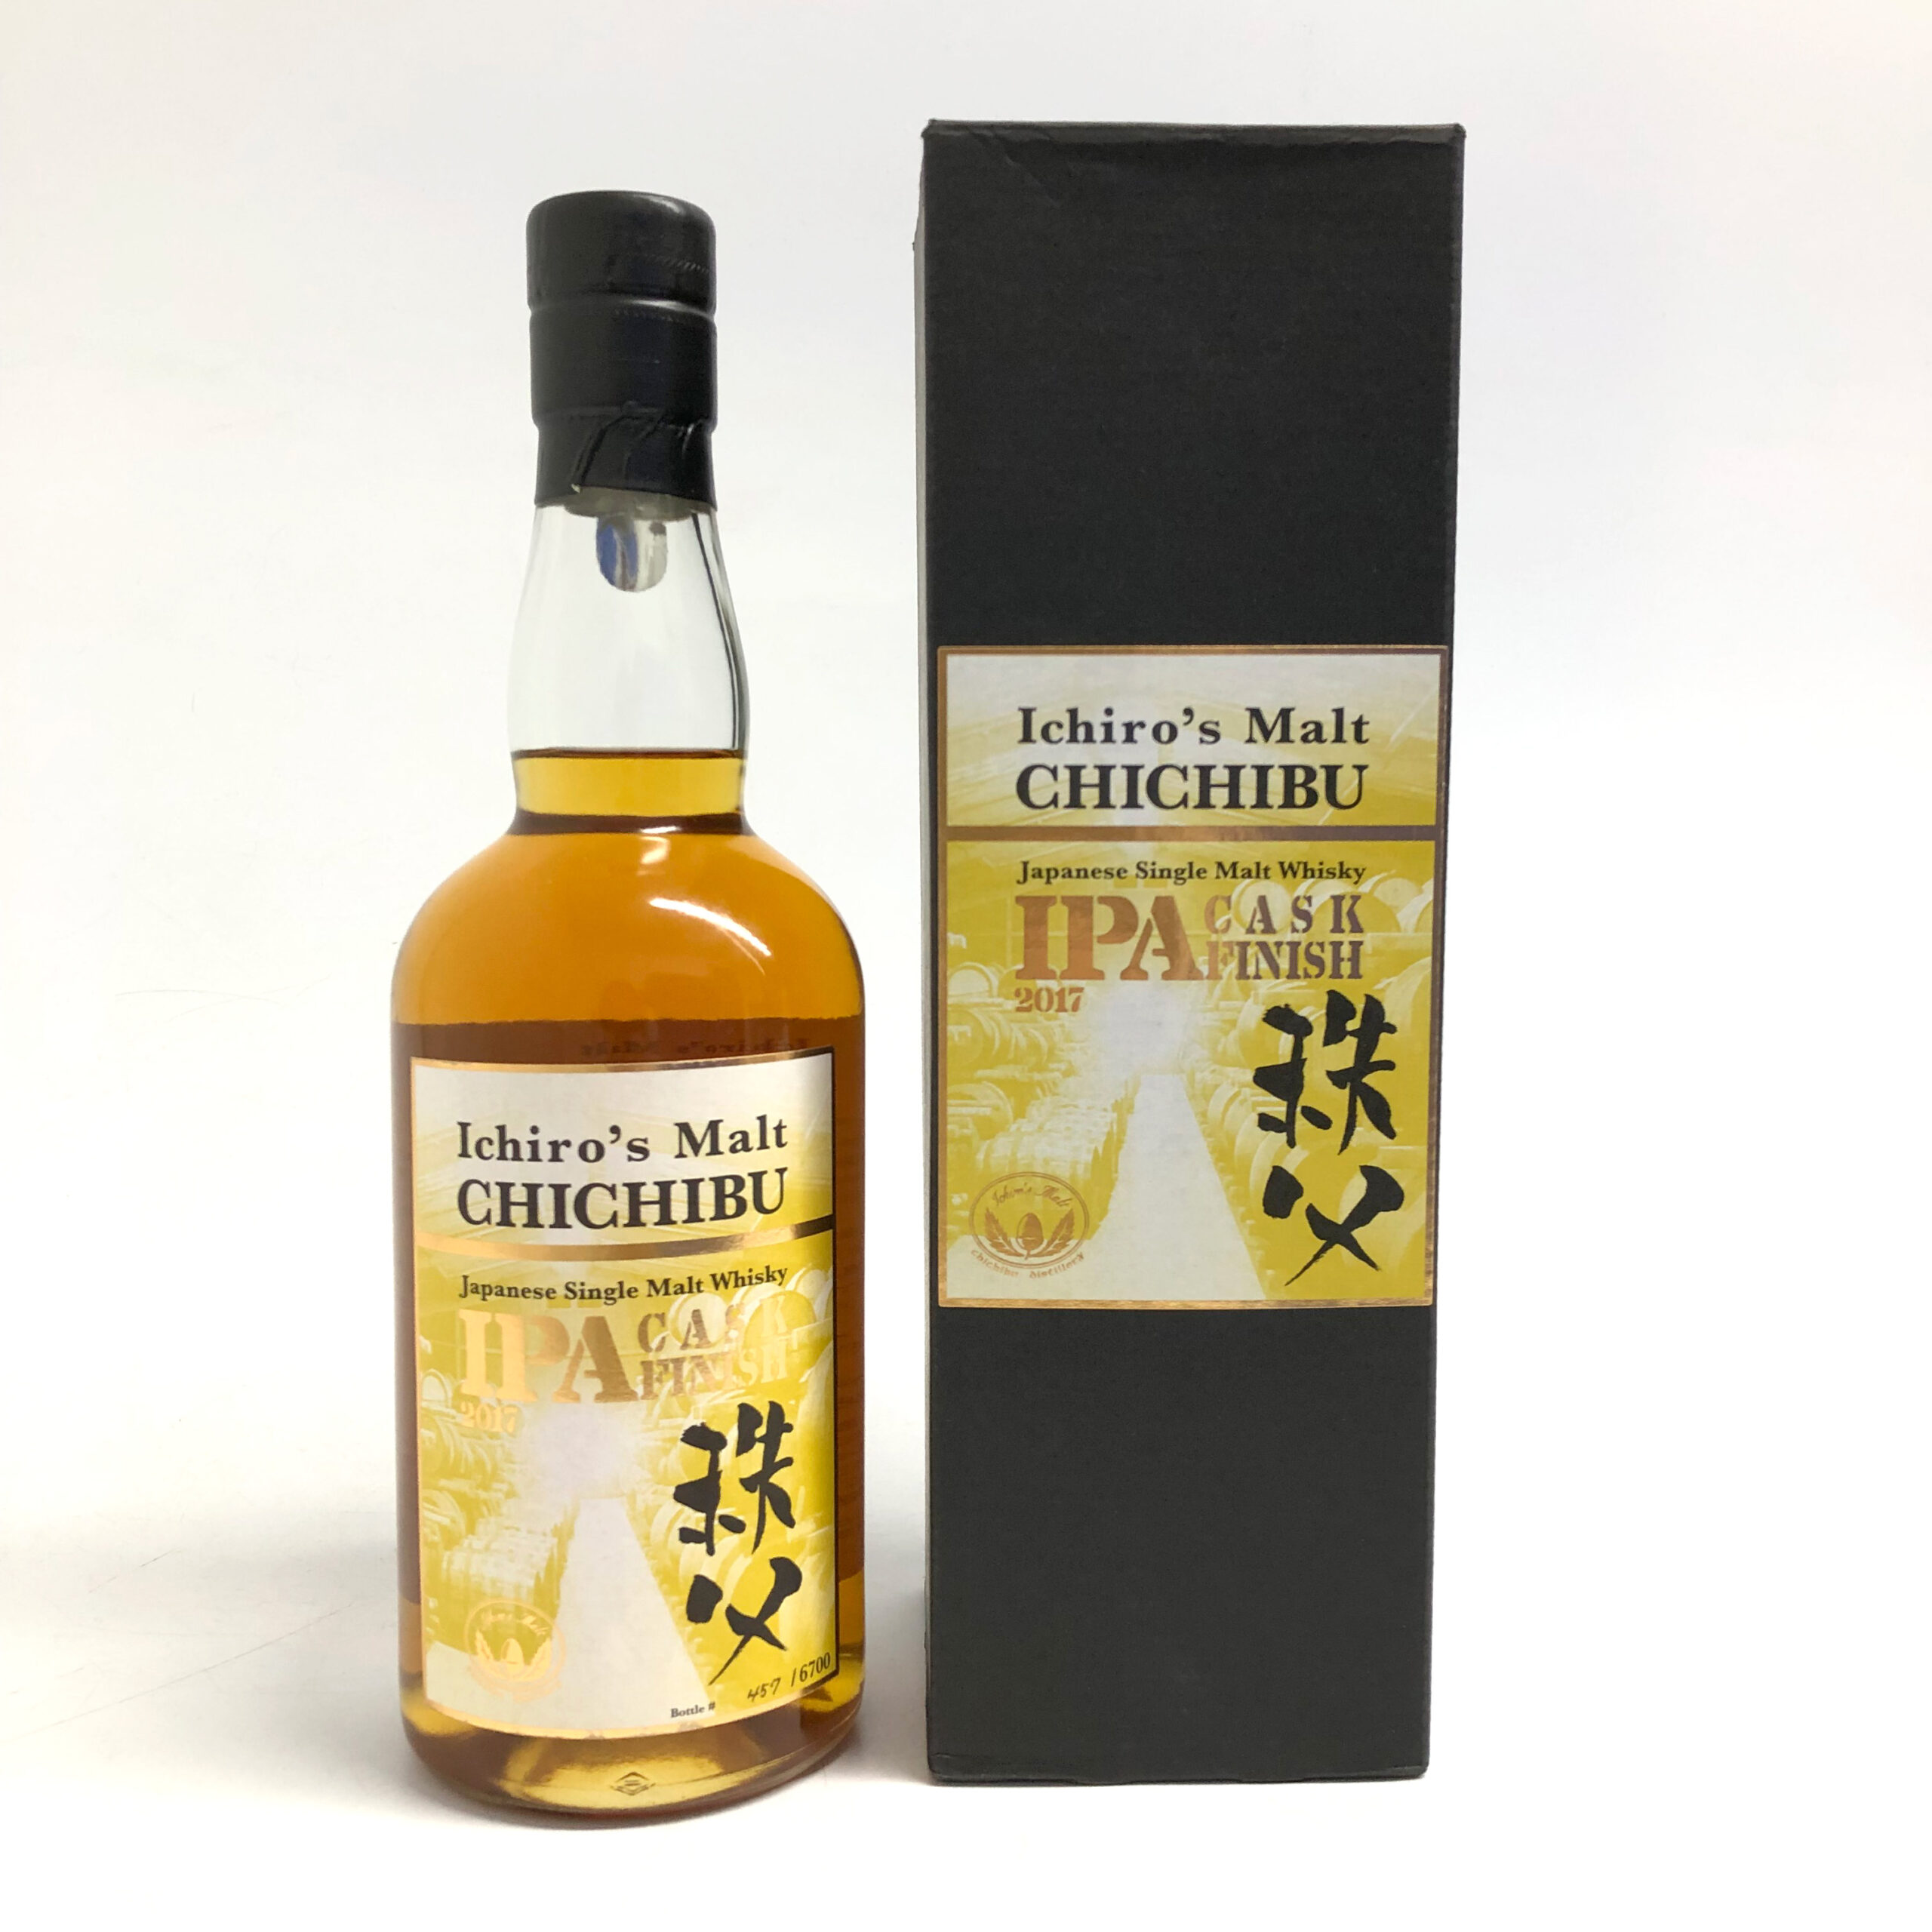 Venture Whisky Ichiro's Malt Chichibu IPA cask finish 2017